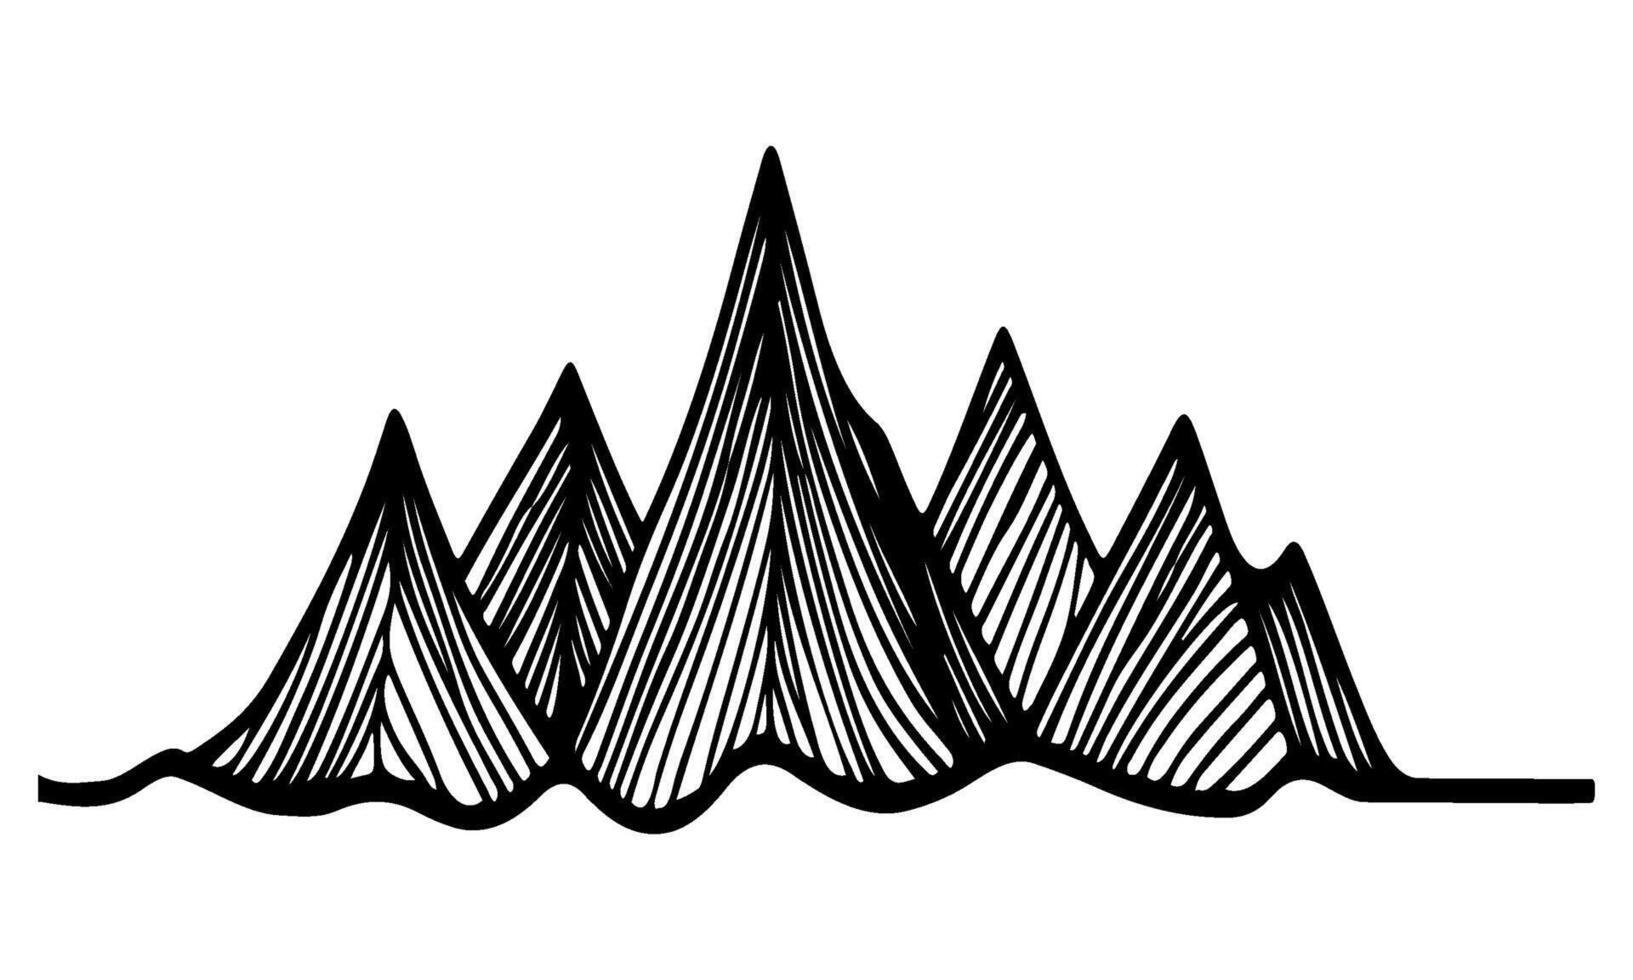 teckning berg med skog tall träd landskap svart linje skiss konst hand dragen linjär stil vektor illustration